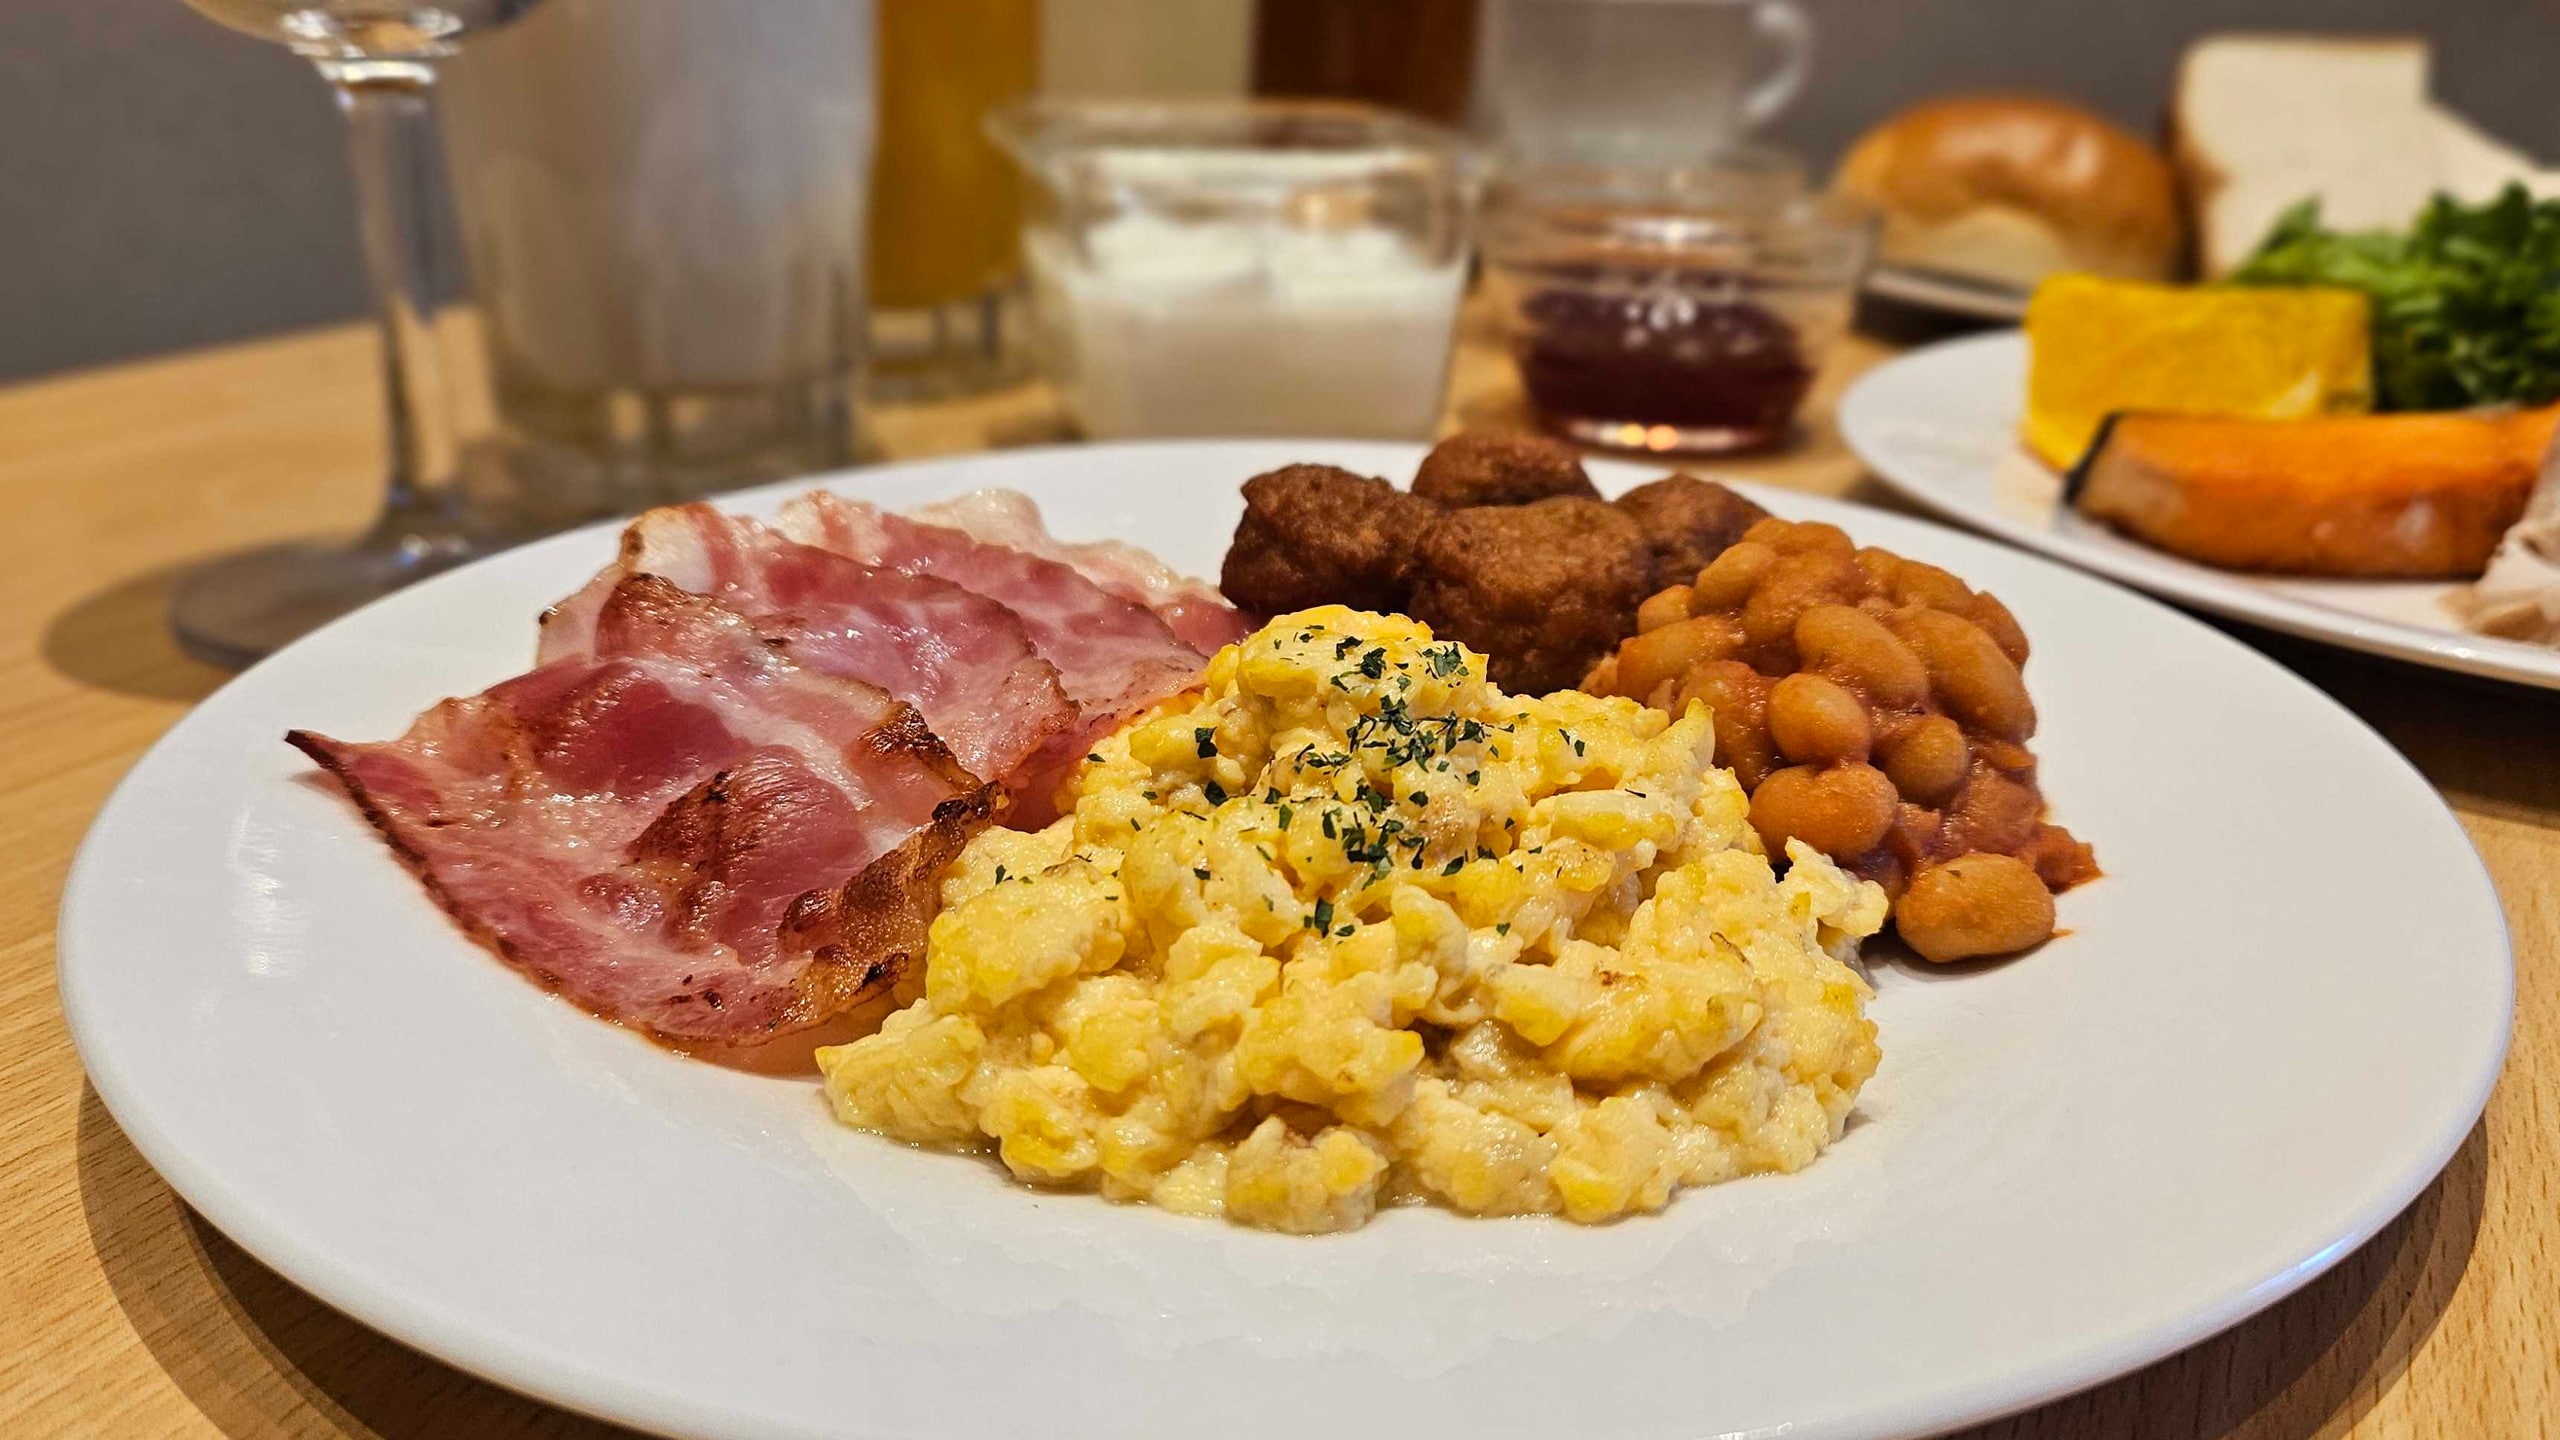 [Breakfast] Fried eggs & bacon